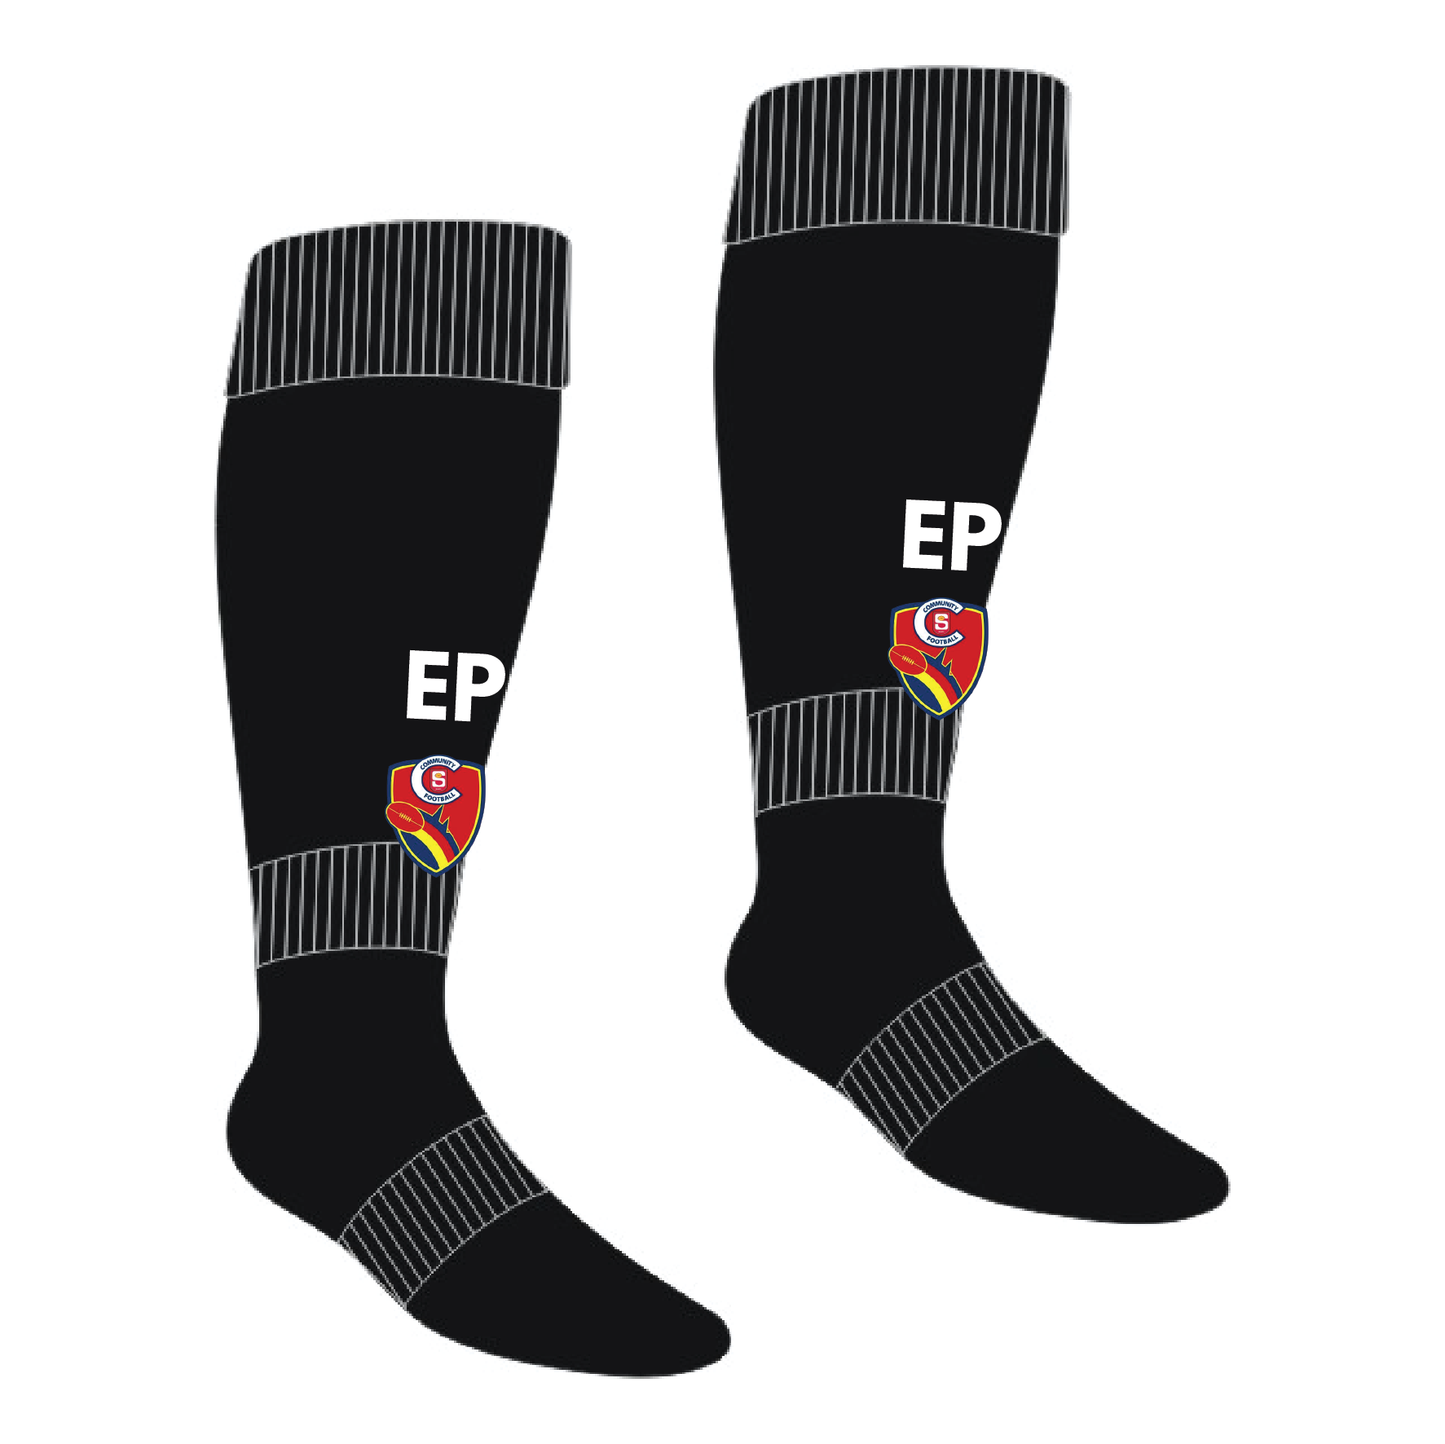 EP Football Socks Black